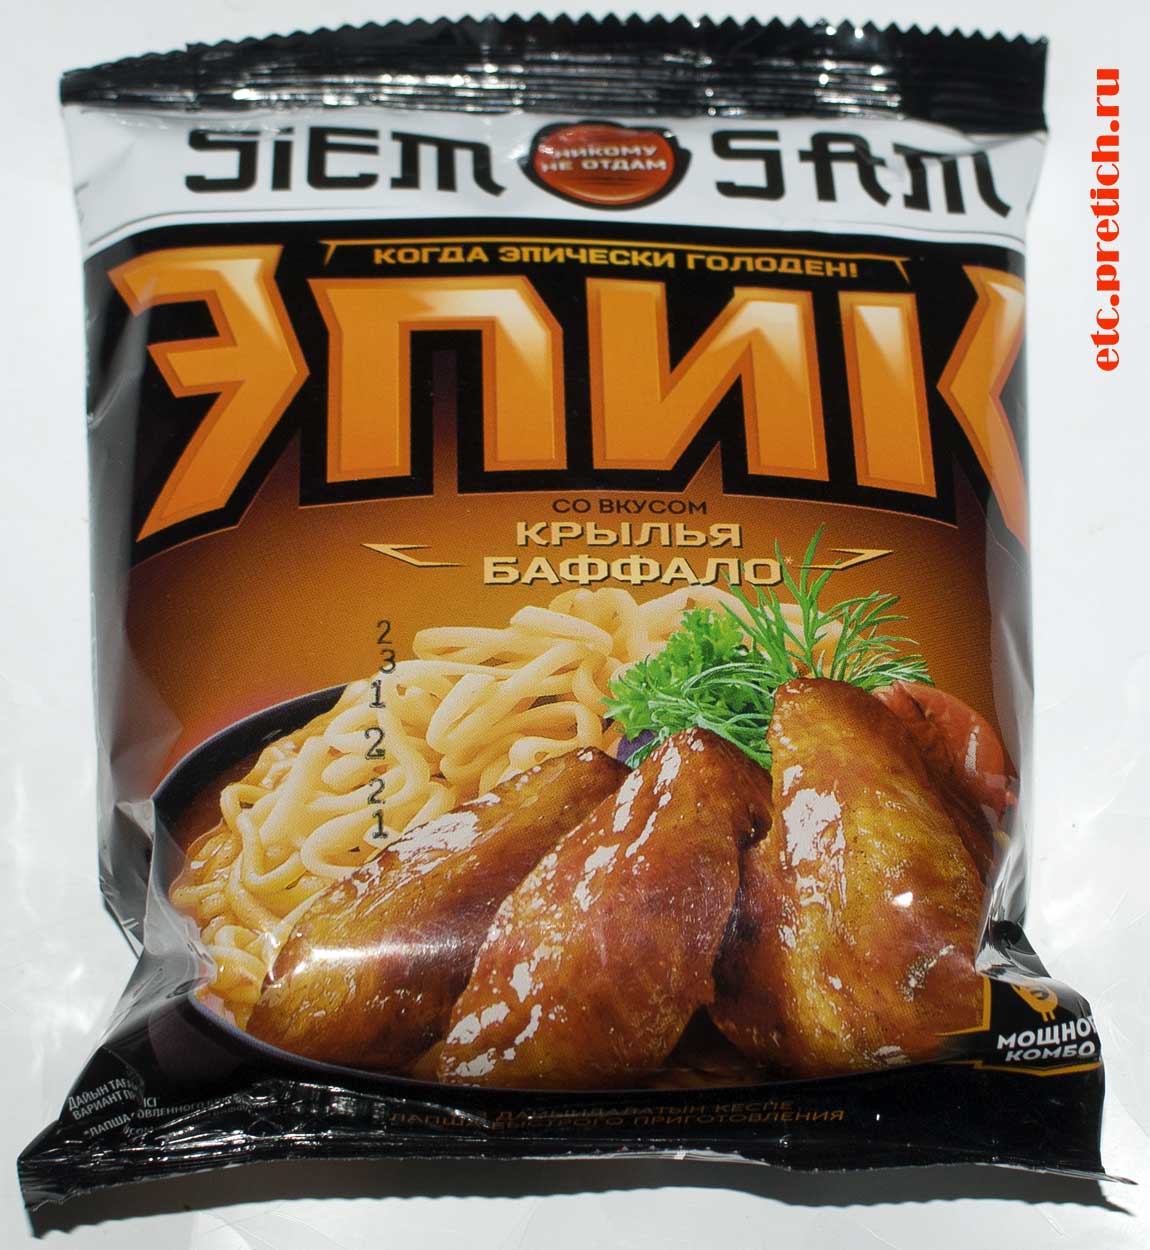 Отзыв и полное описание Siem Sam лапша Эпик со вкусом Крылья Буффало